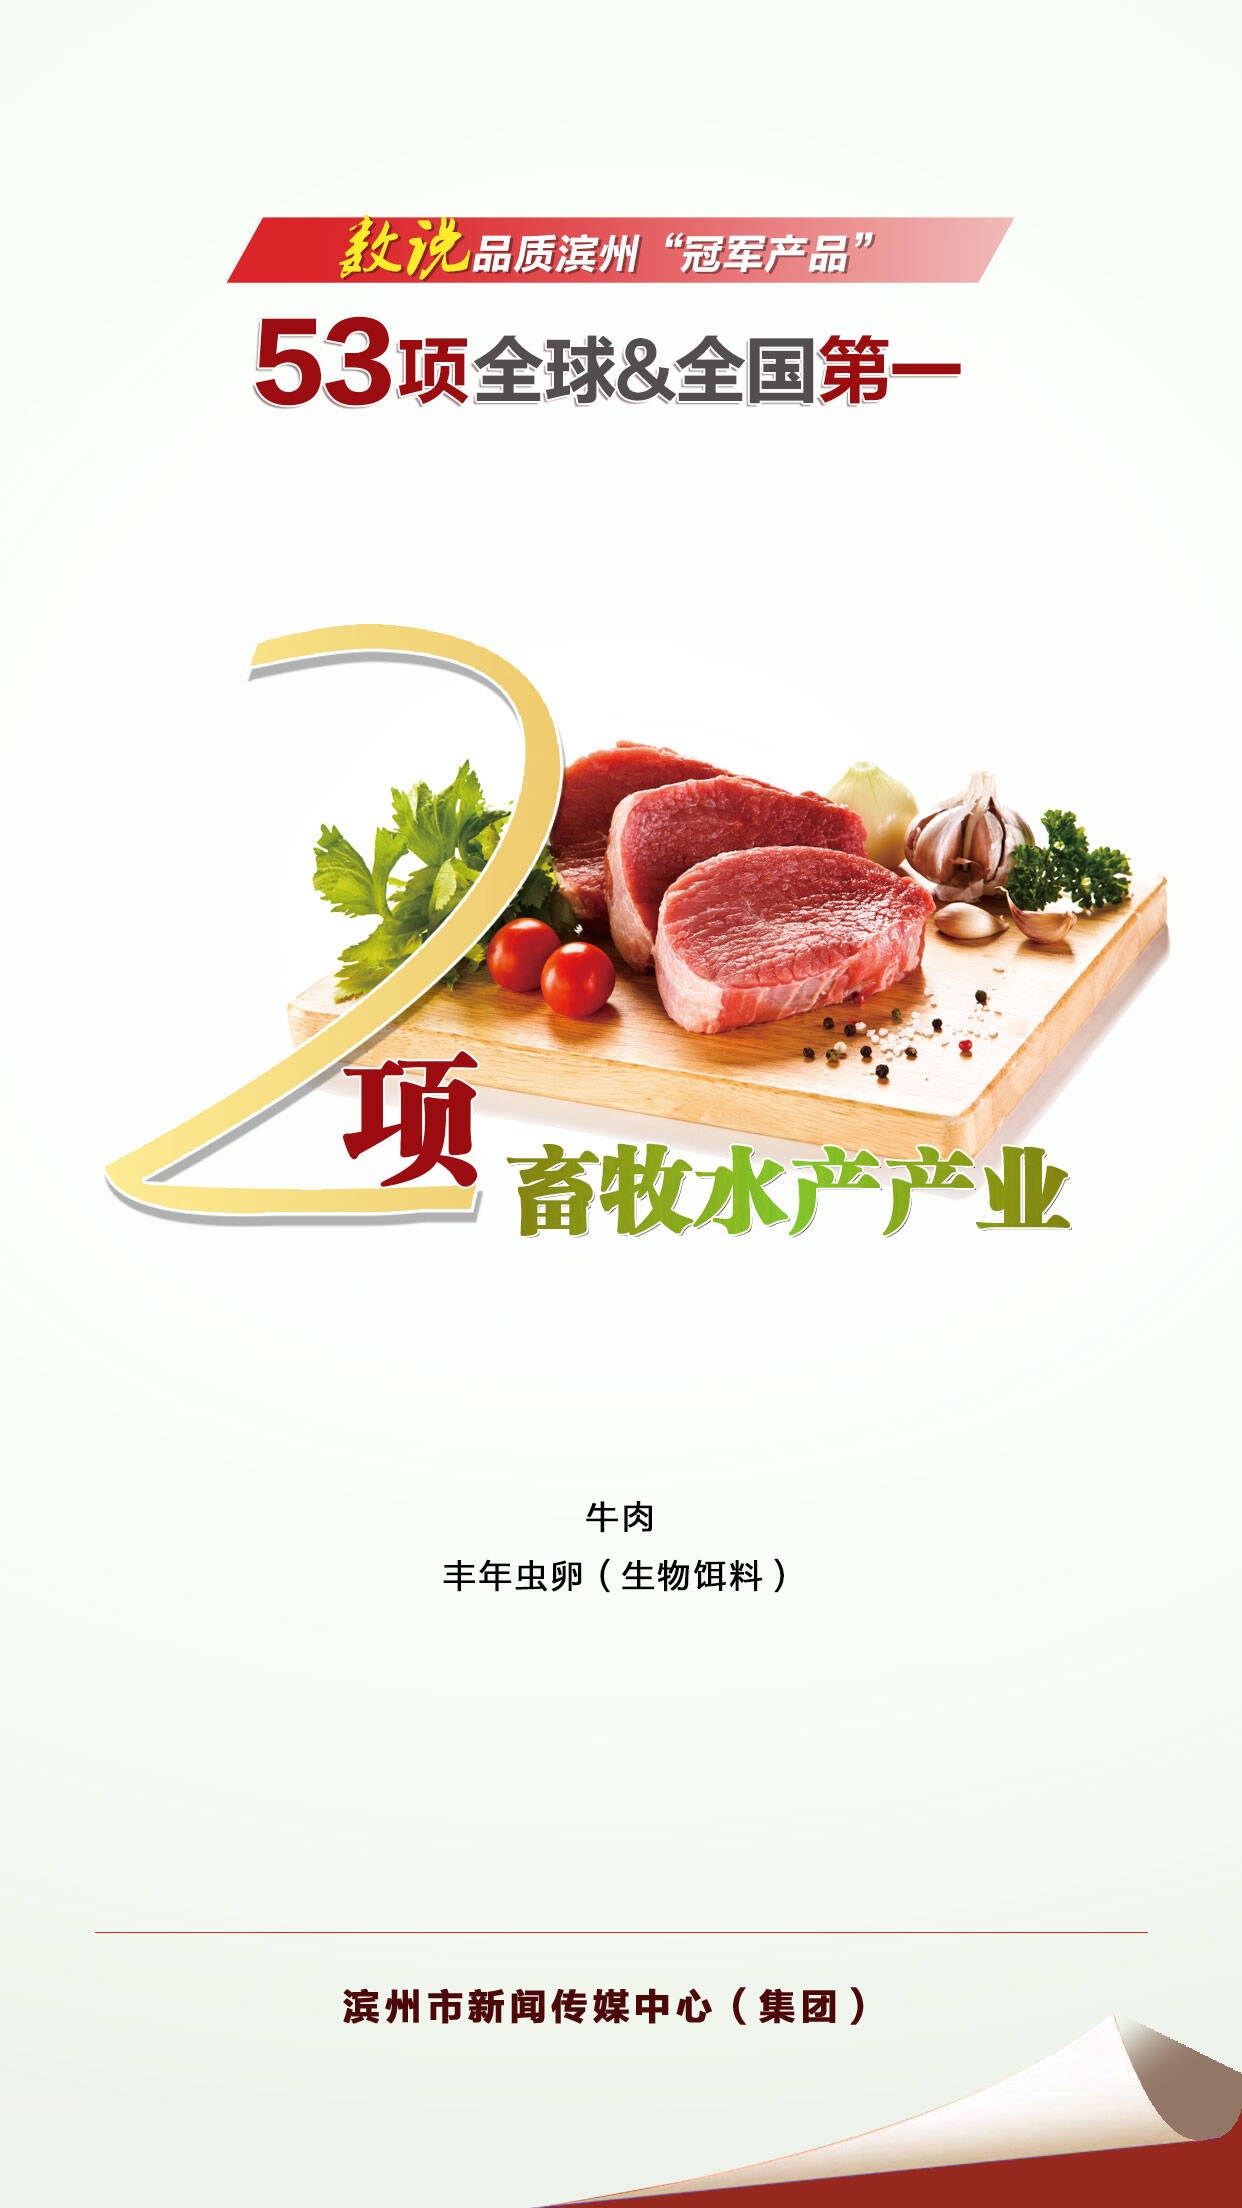 数说品质滨州“冠军产品” 53项全球全国第一 | 2项畜牧水产产业(图1)